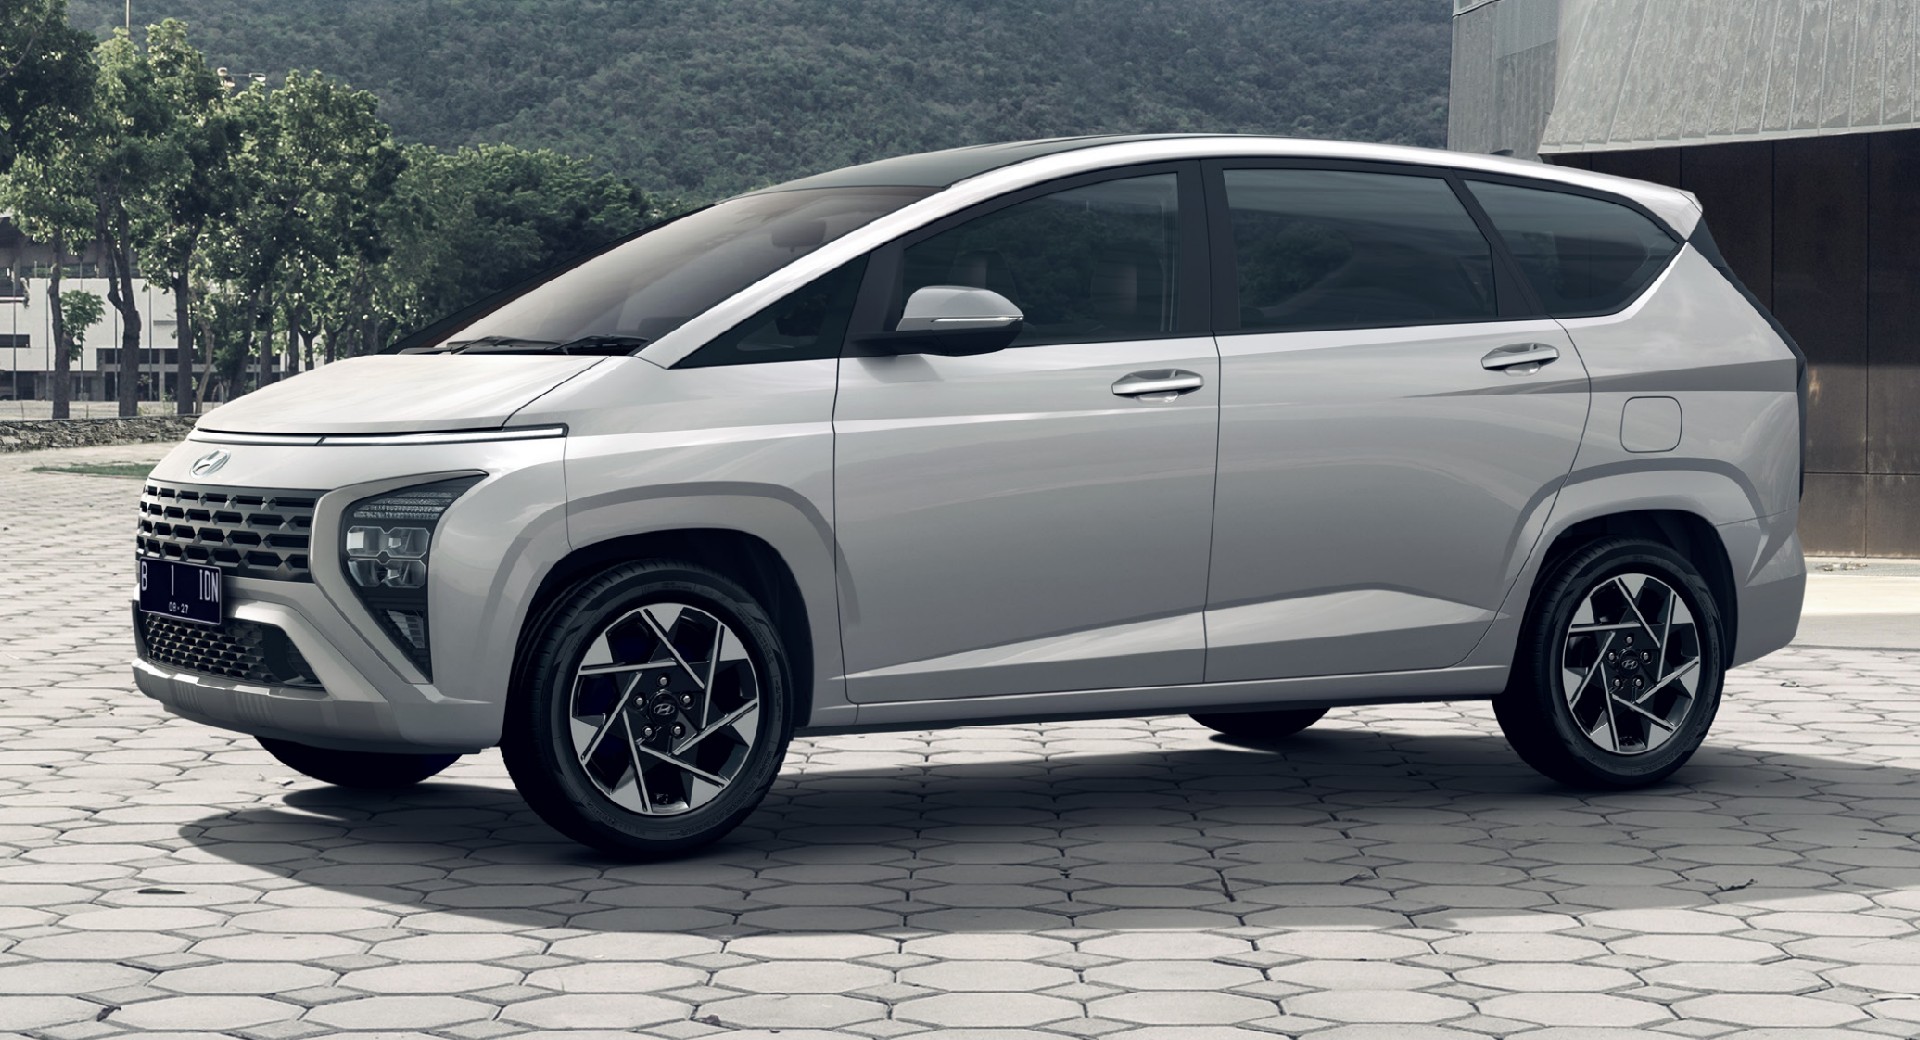 W Indonezji Hyundai gapi się w gwiazdy. Bintang baru keluarga